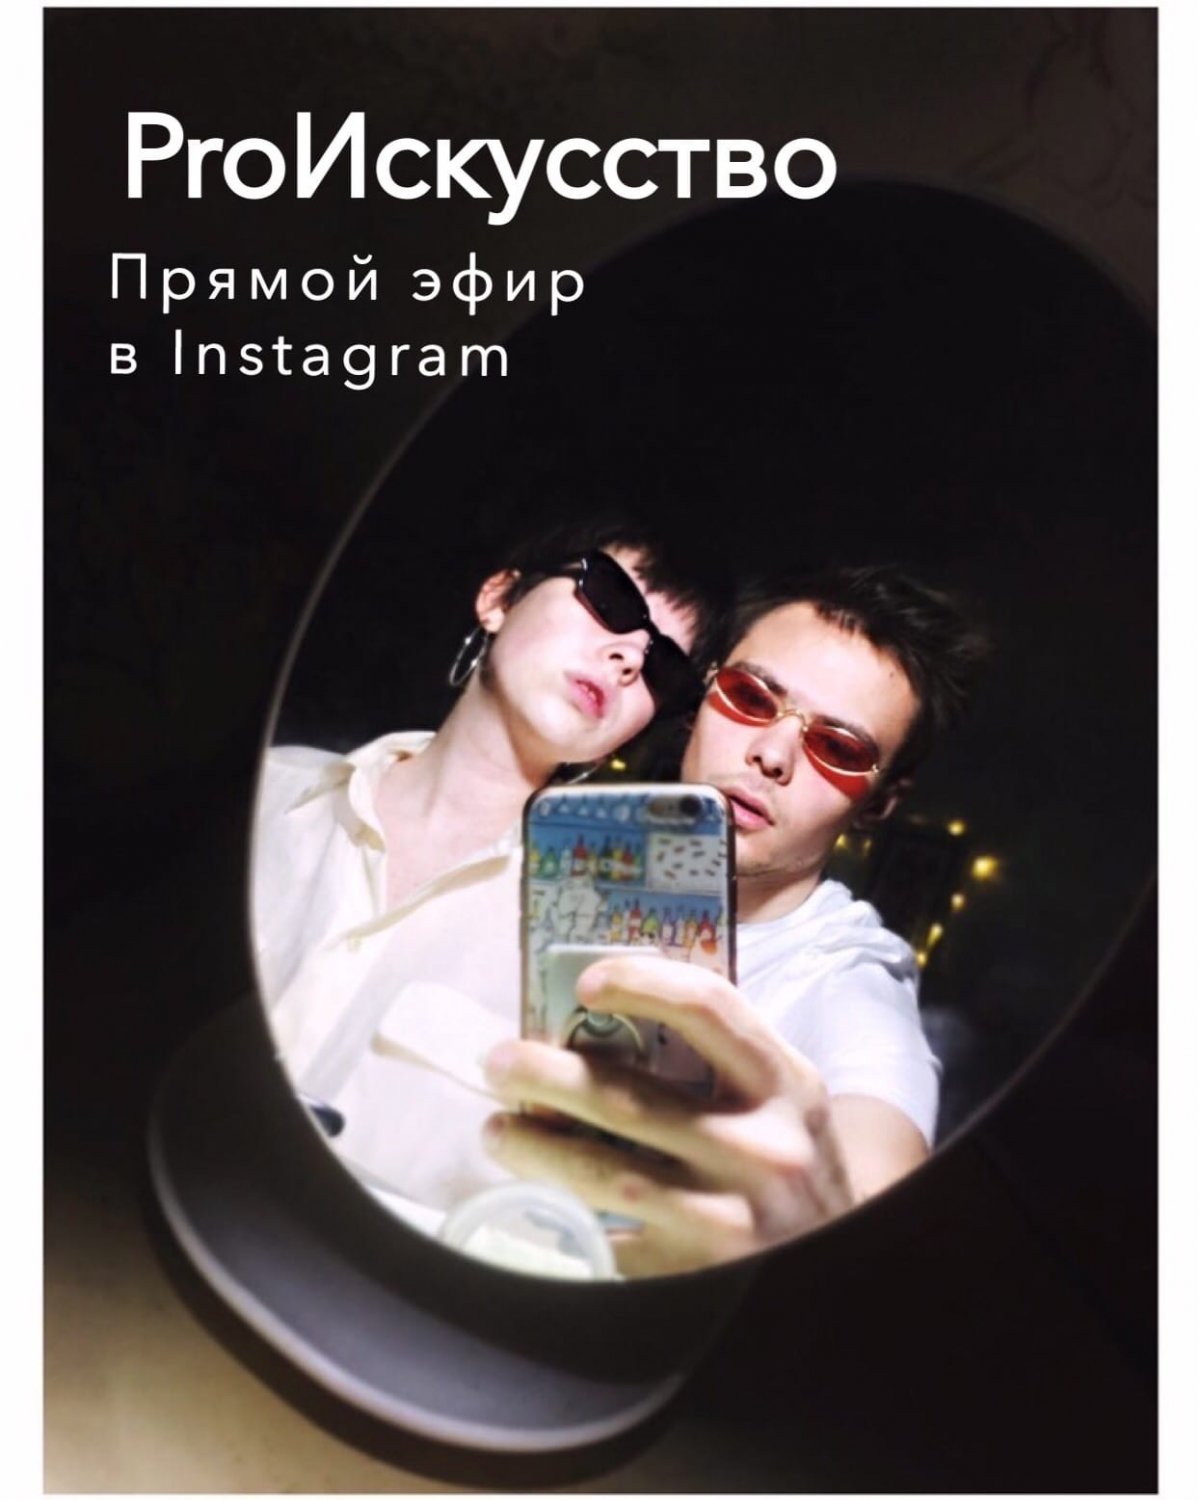 Во вторник, 31 марта в 18:00, студенты 4 курса Юля Штельма и Виктор Шахбазов, проведут в Instagram прямой эфир, будут задавать друг другу каверзные и не очень вопросы на тему искусства и как в нем выжить.